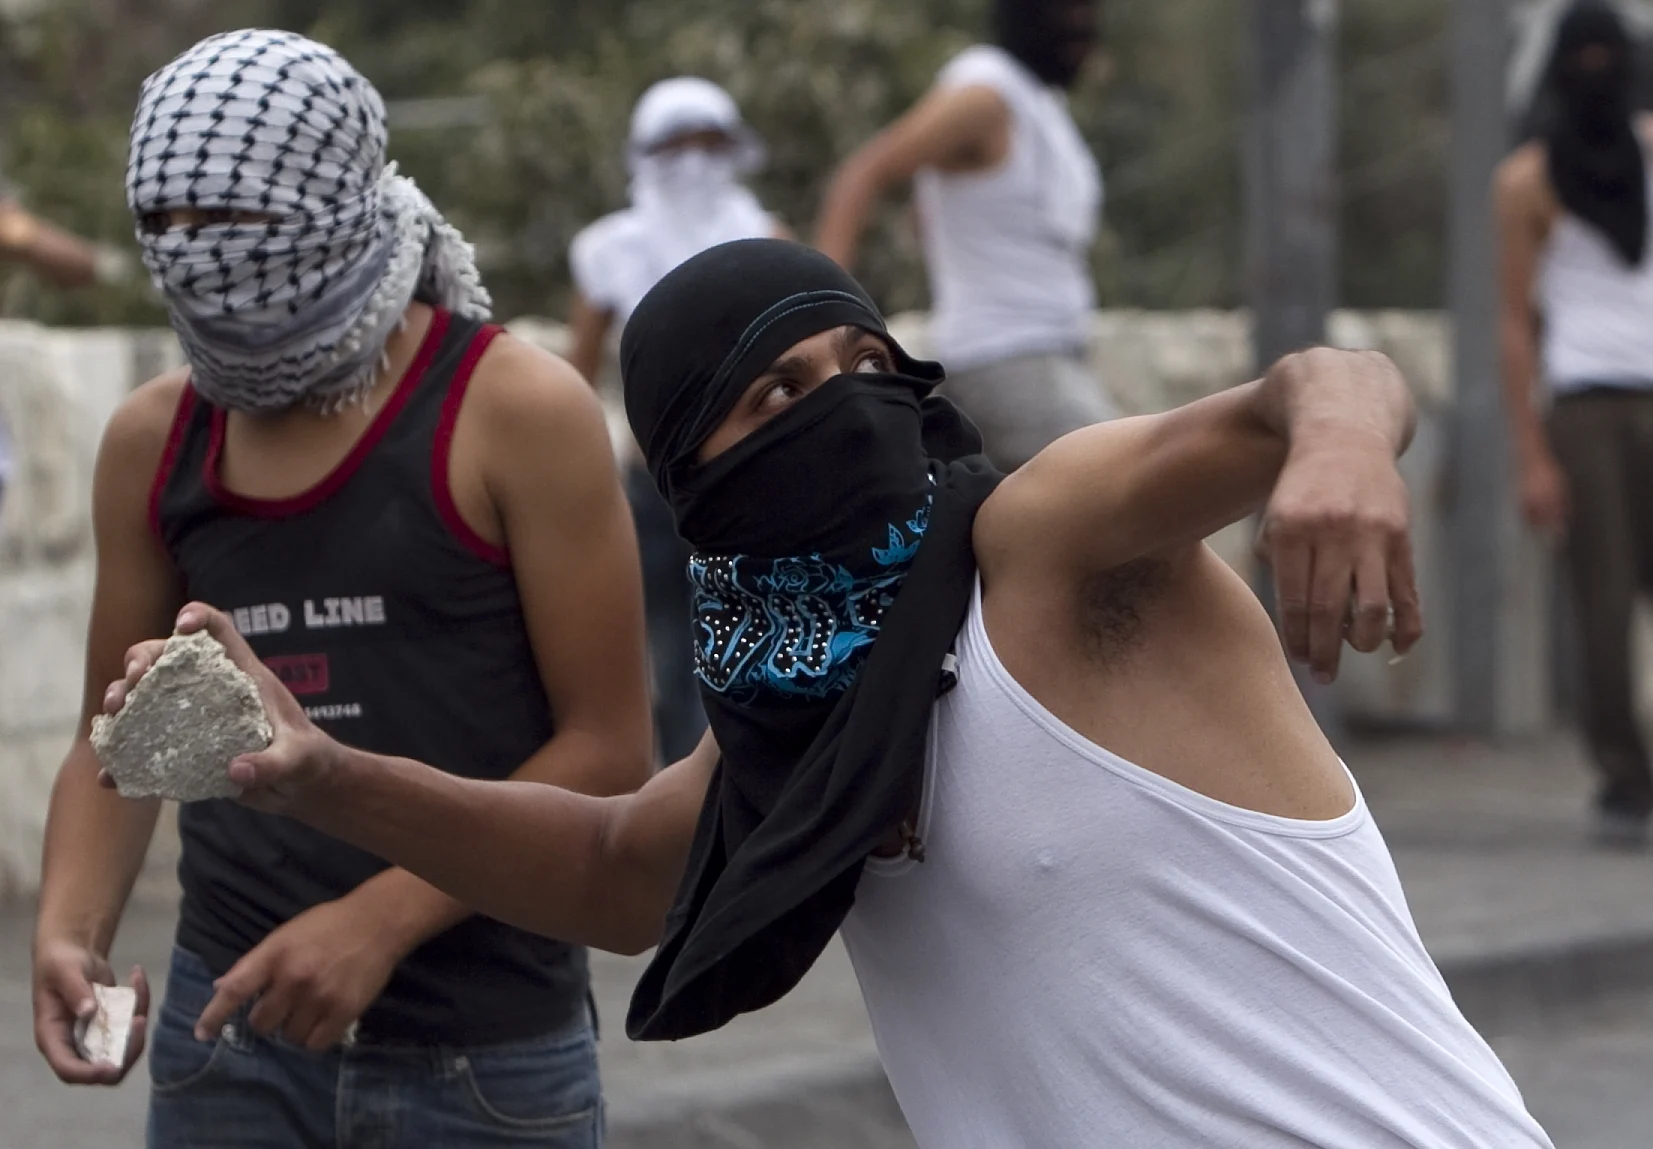 פלסטינים מיידים אבנים במהלך מהומות בסילוואן שבמזרח ירושלים